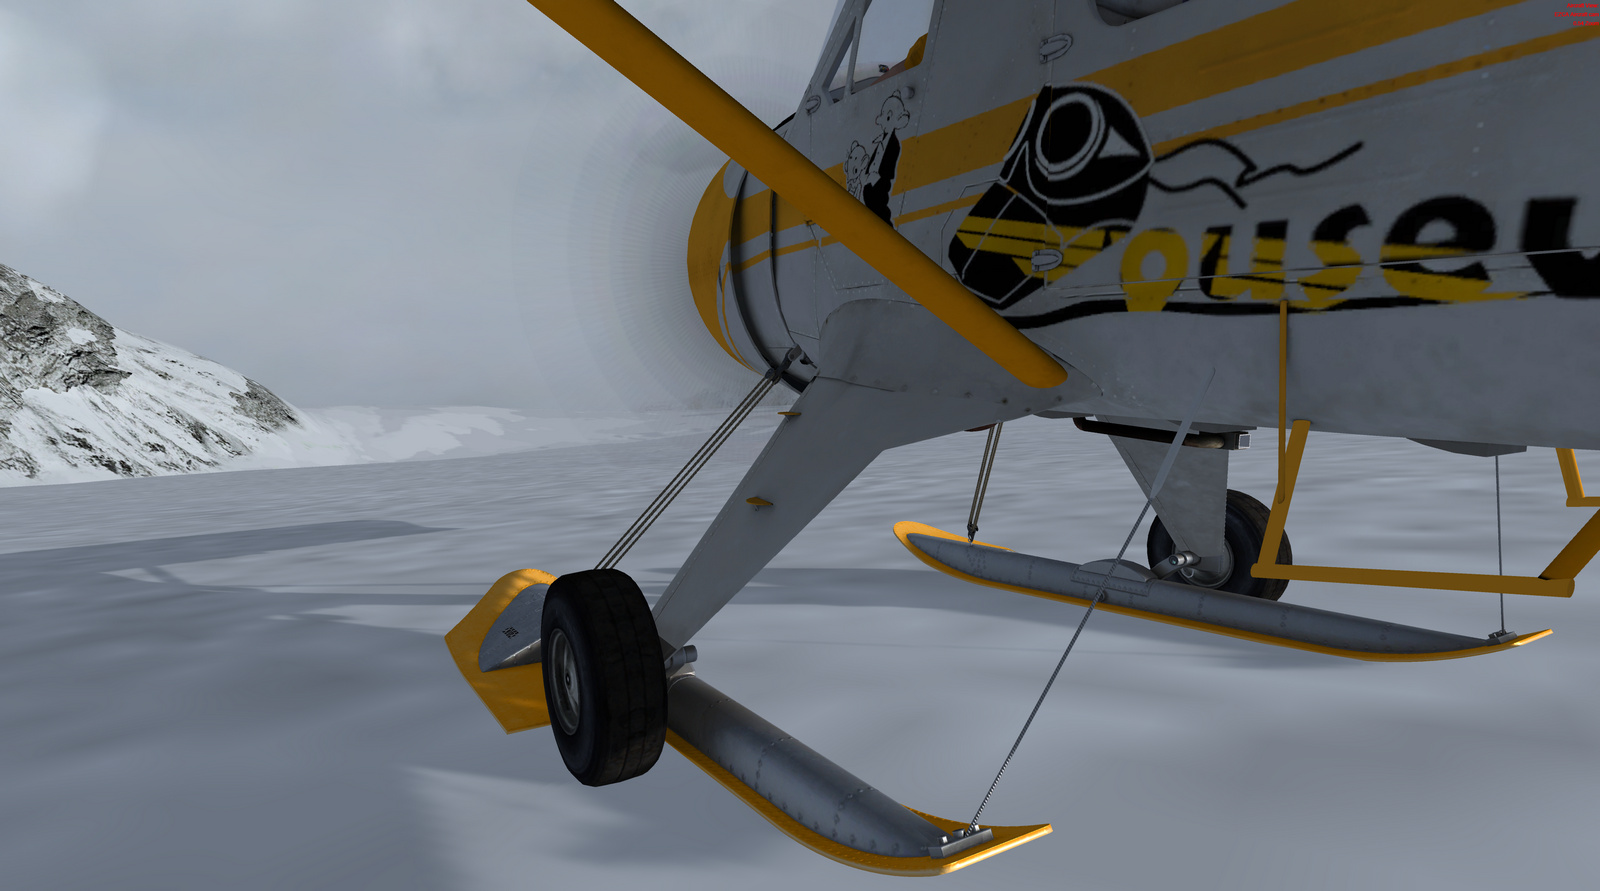 DHC-2 Beaver, Mouseviator,Skisversion, Screenshot 19/19